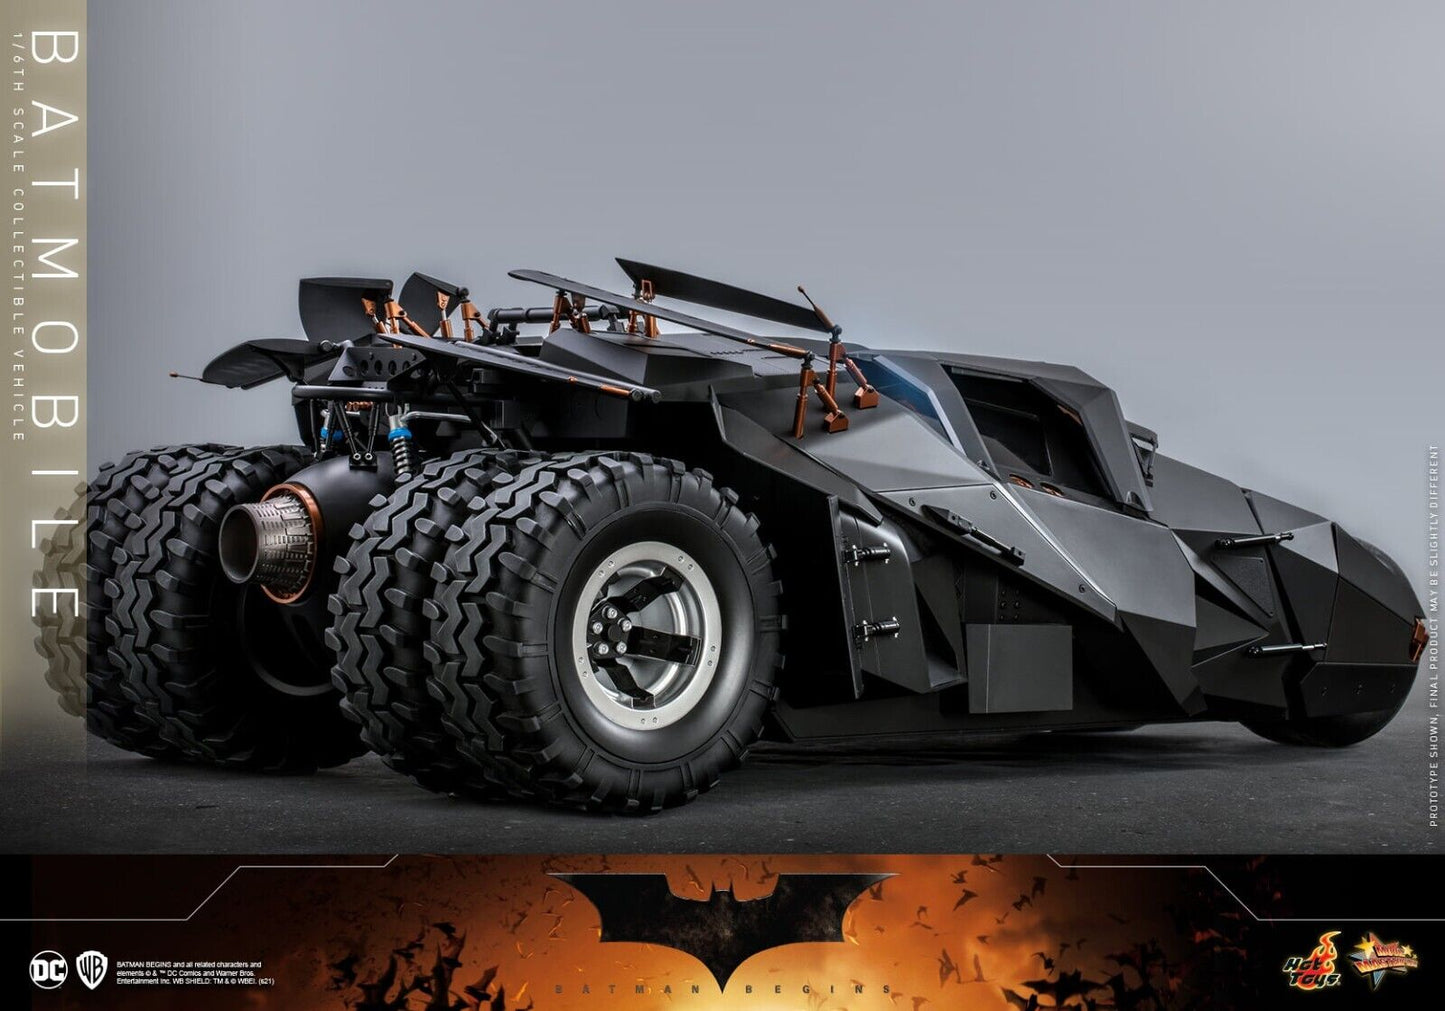 Pedido Vehículo Batmobile Tumbler - Dark Knight Trilogy marca Hot Toys MMS596 escala 1/6